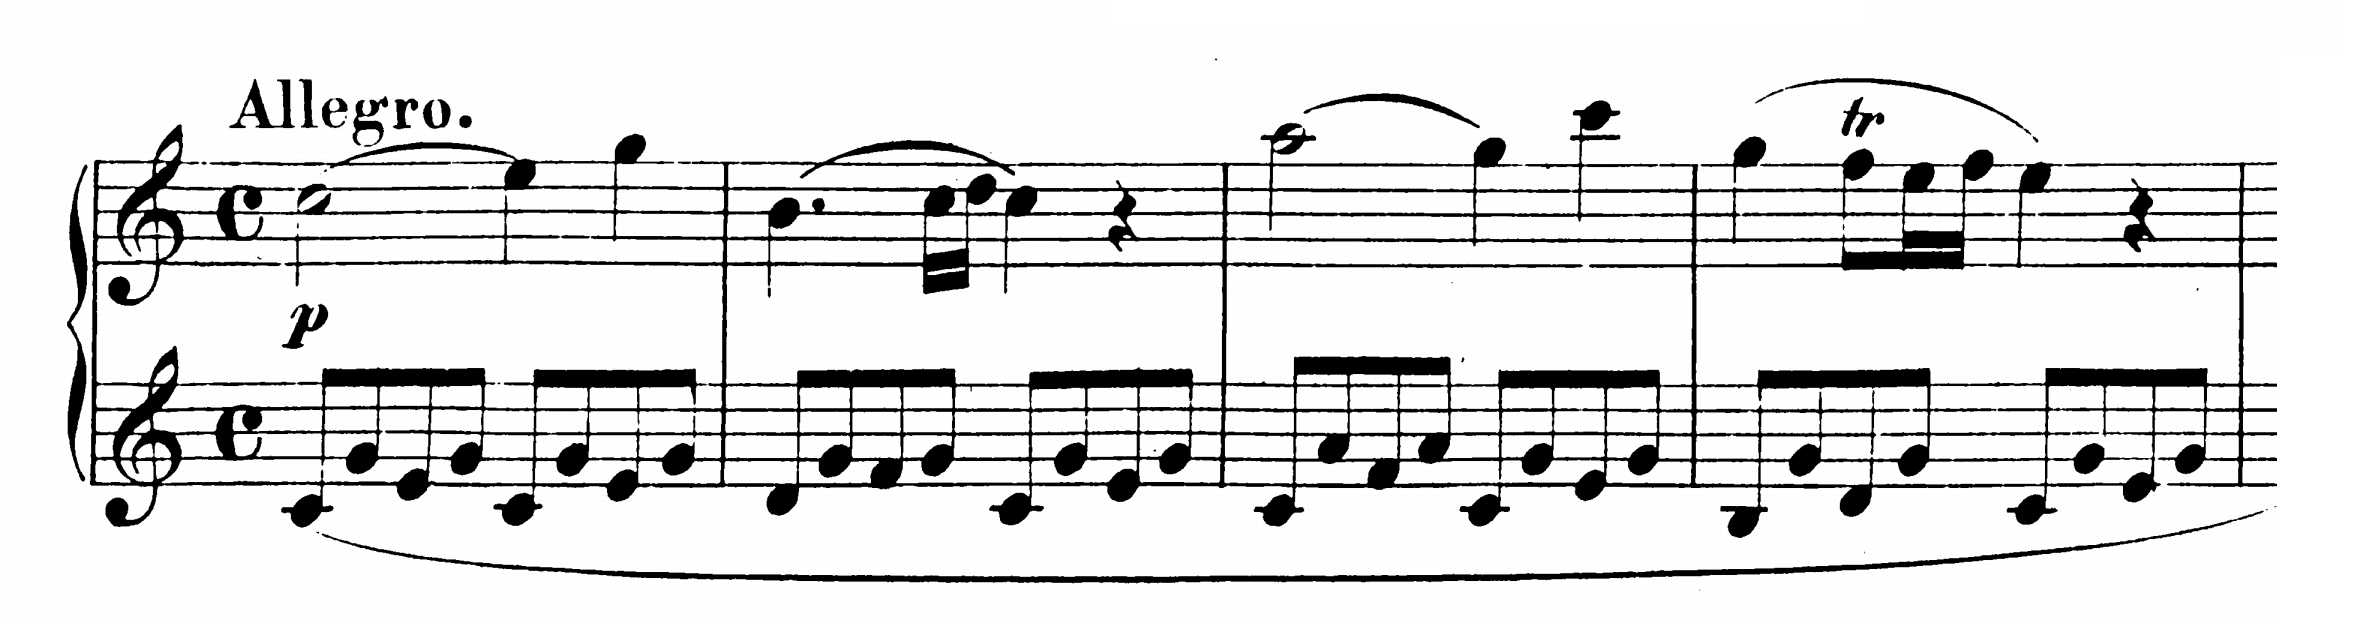 salario mezcla Oscurecer Mozart: Piano Sonata No.16 in C major, K.545 Analysis